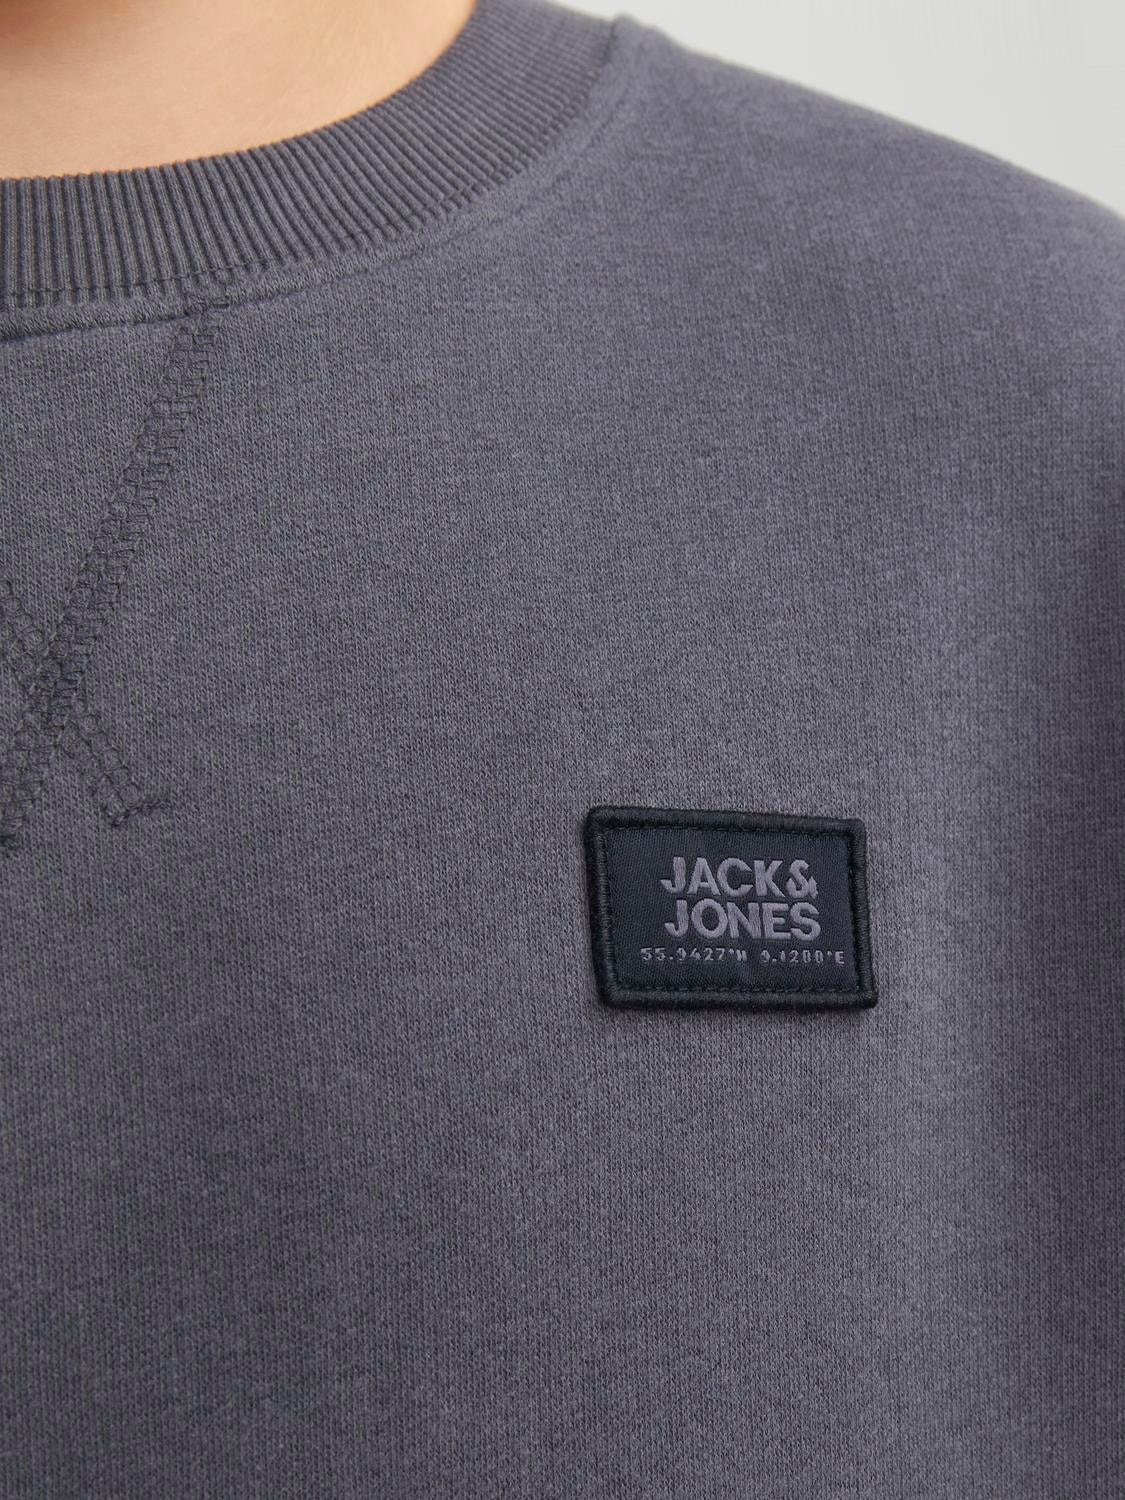 Jack & Jones Felpa Girocollo Con logo Per Bambino -Asphalt - 12240997